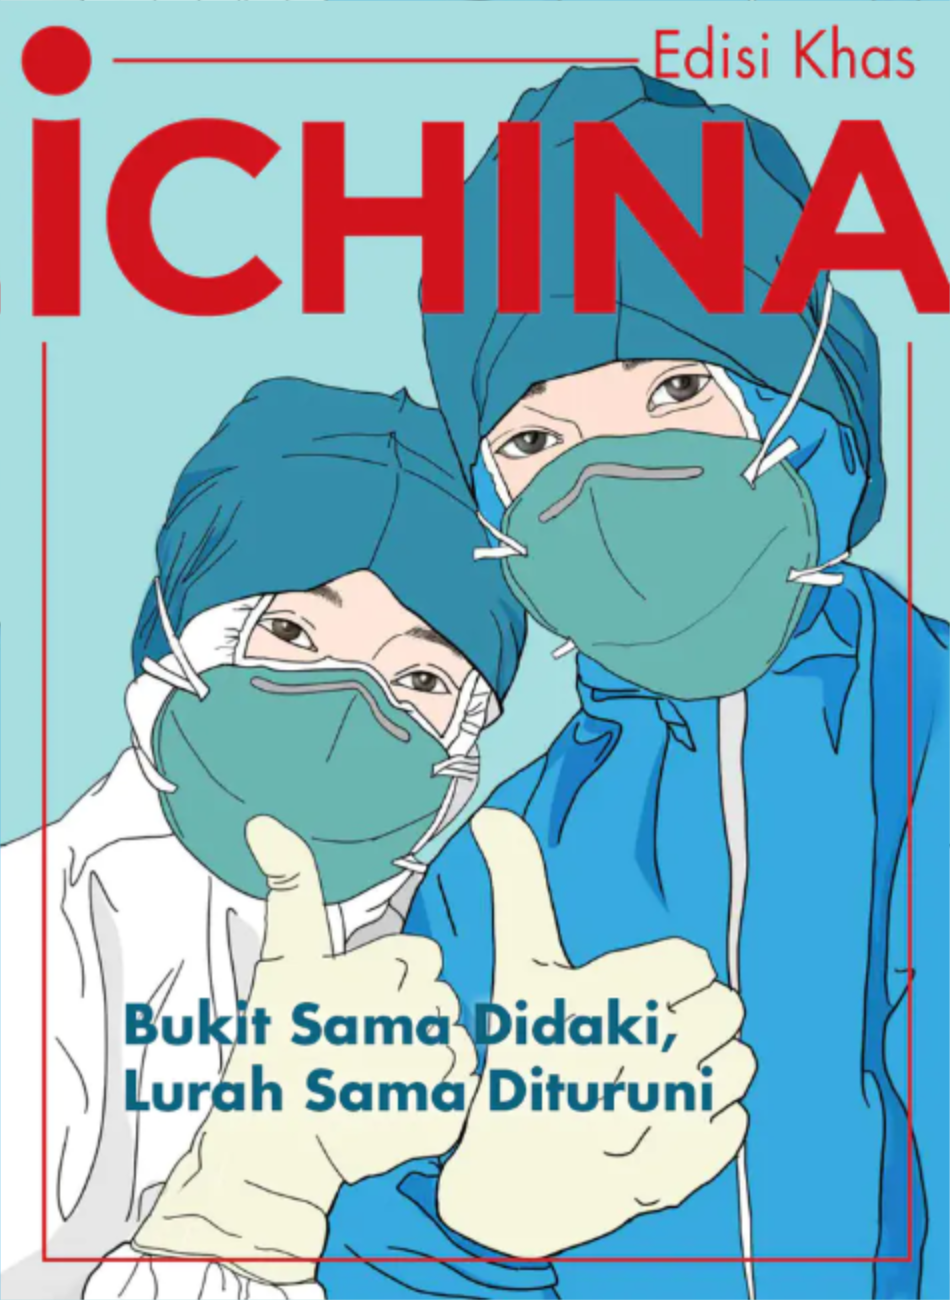 iChina 马来语专刊